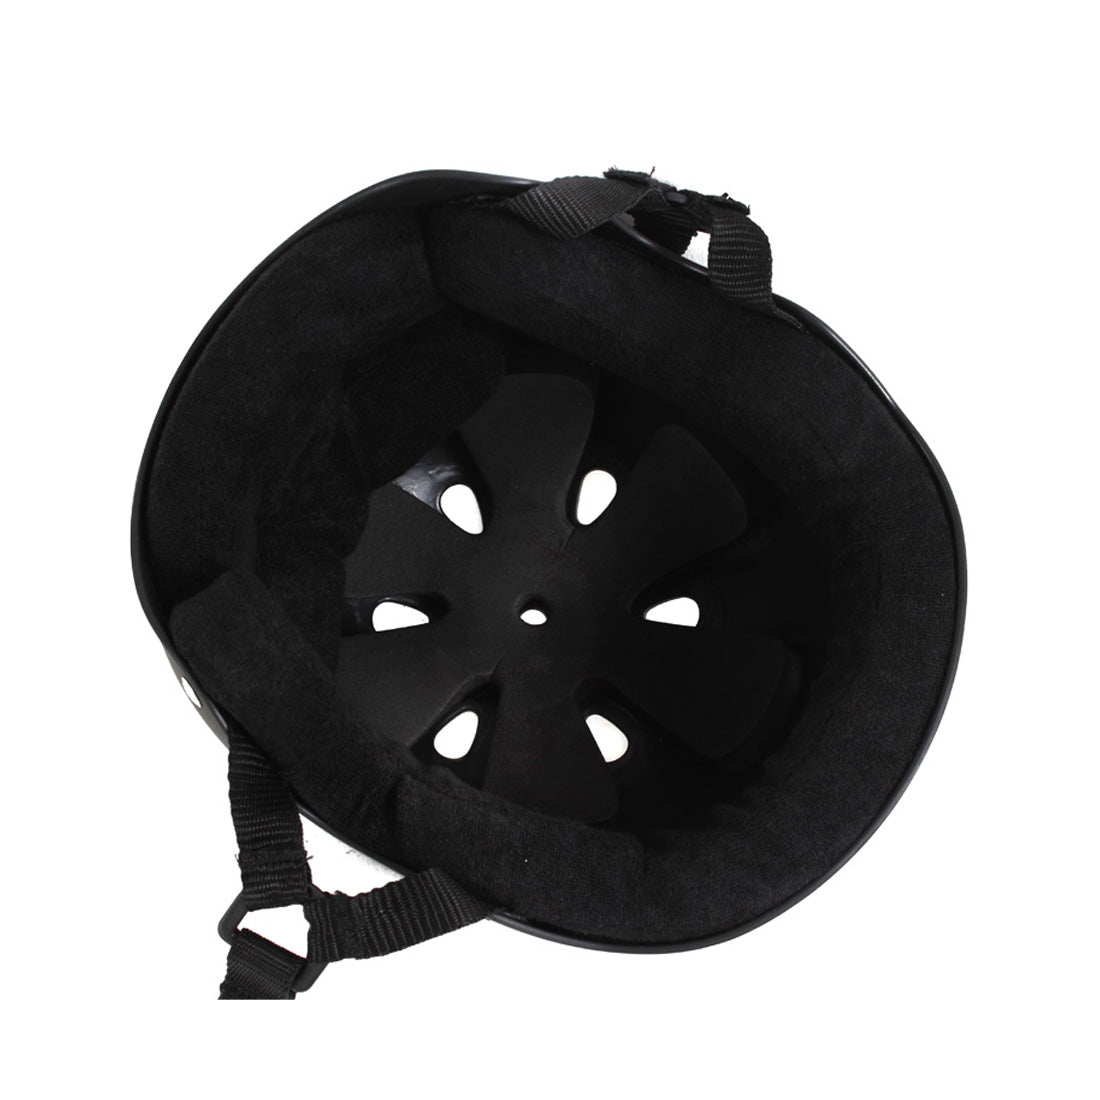 Triple 8 Skate SS Helmet - Black Rubber Helmets